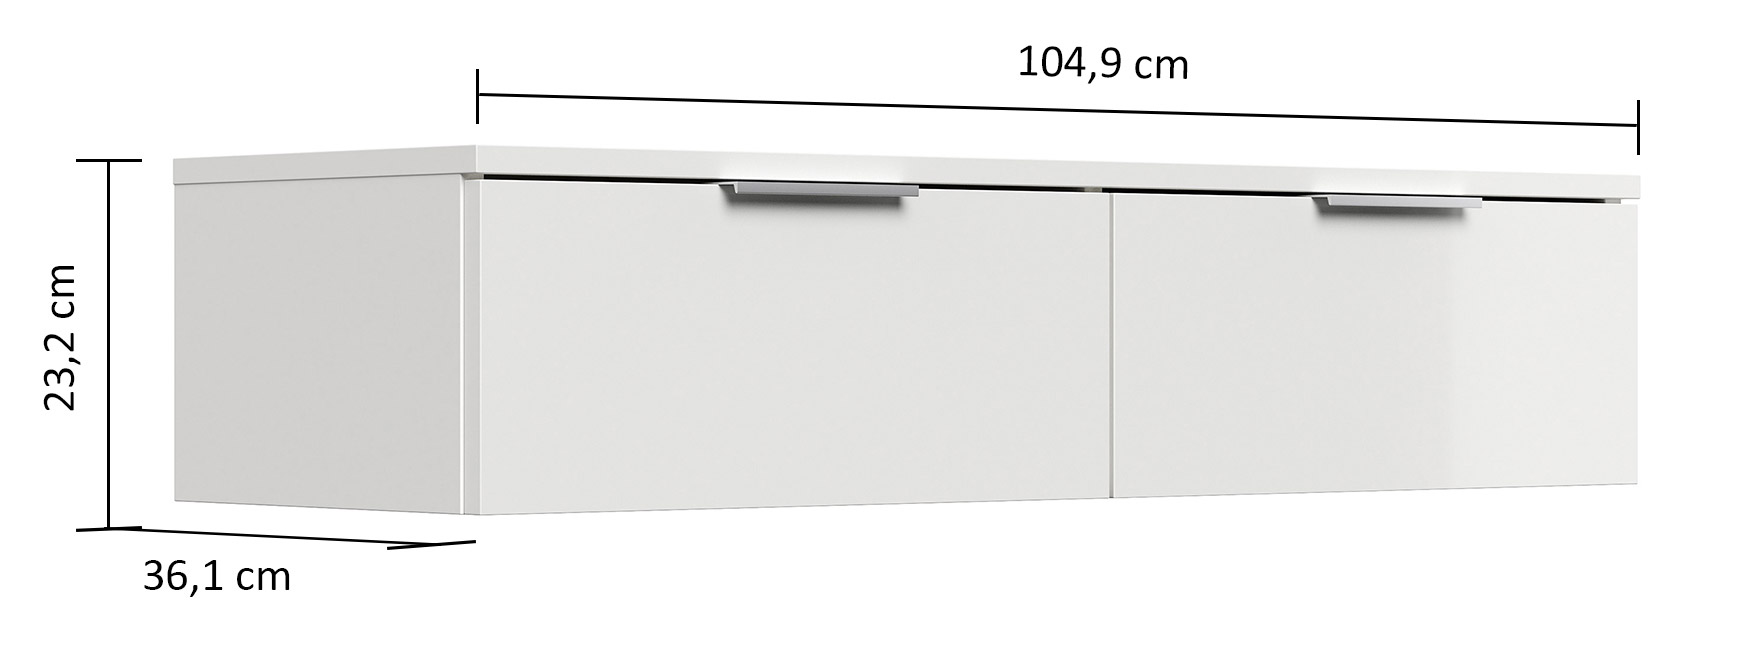 Design Hängekonsole Sideboard Urban Slimline 2 Softeinzüge lackiert Weiß Hgl